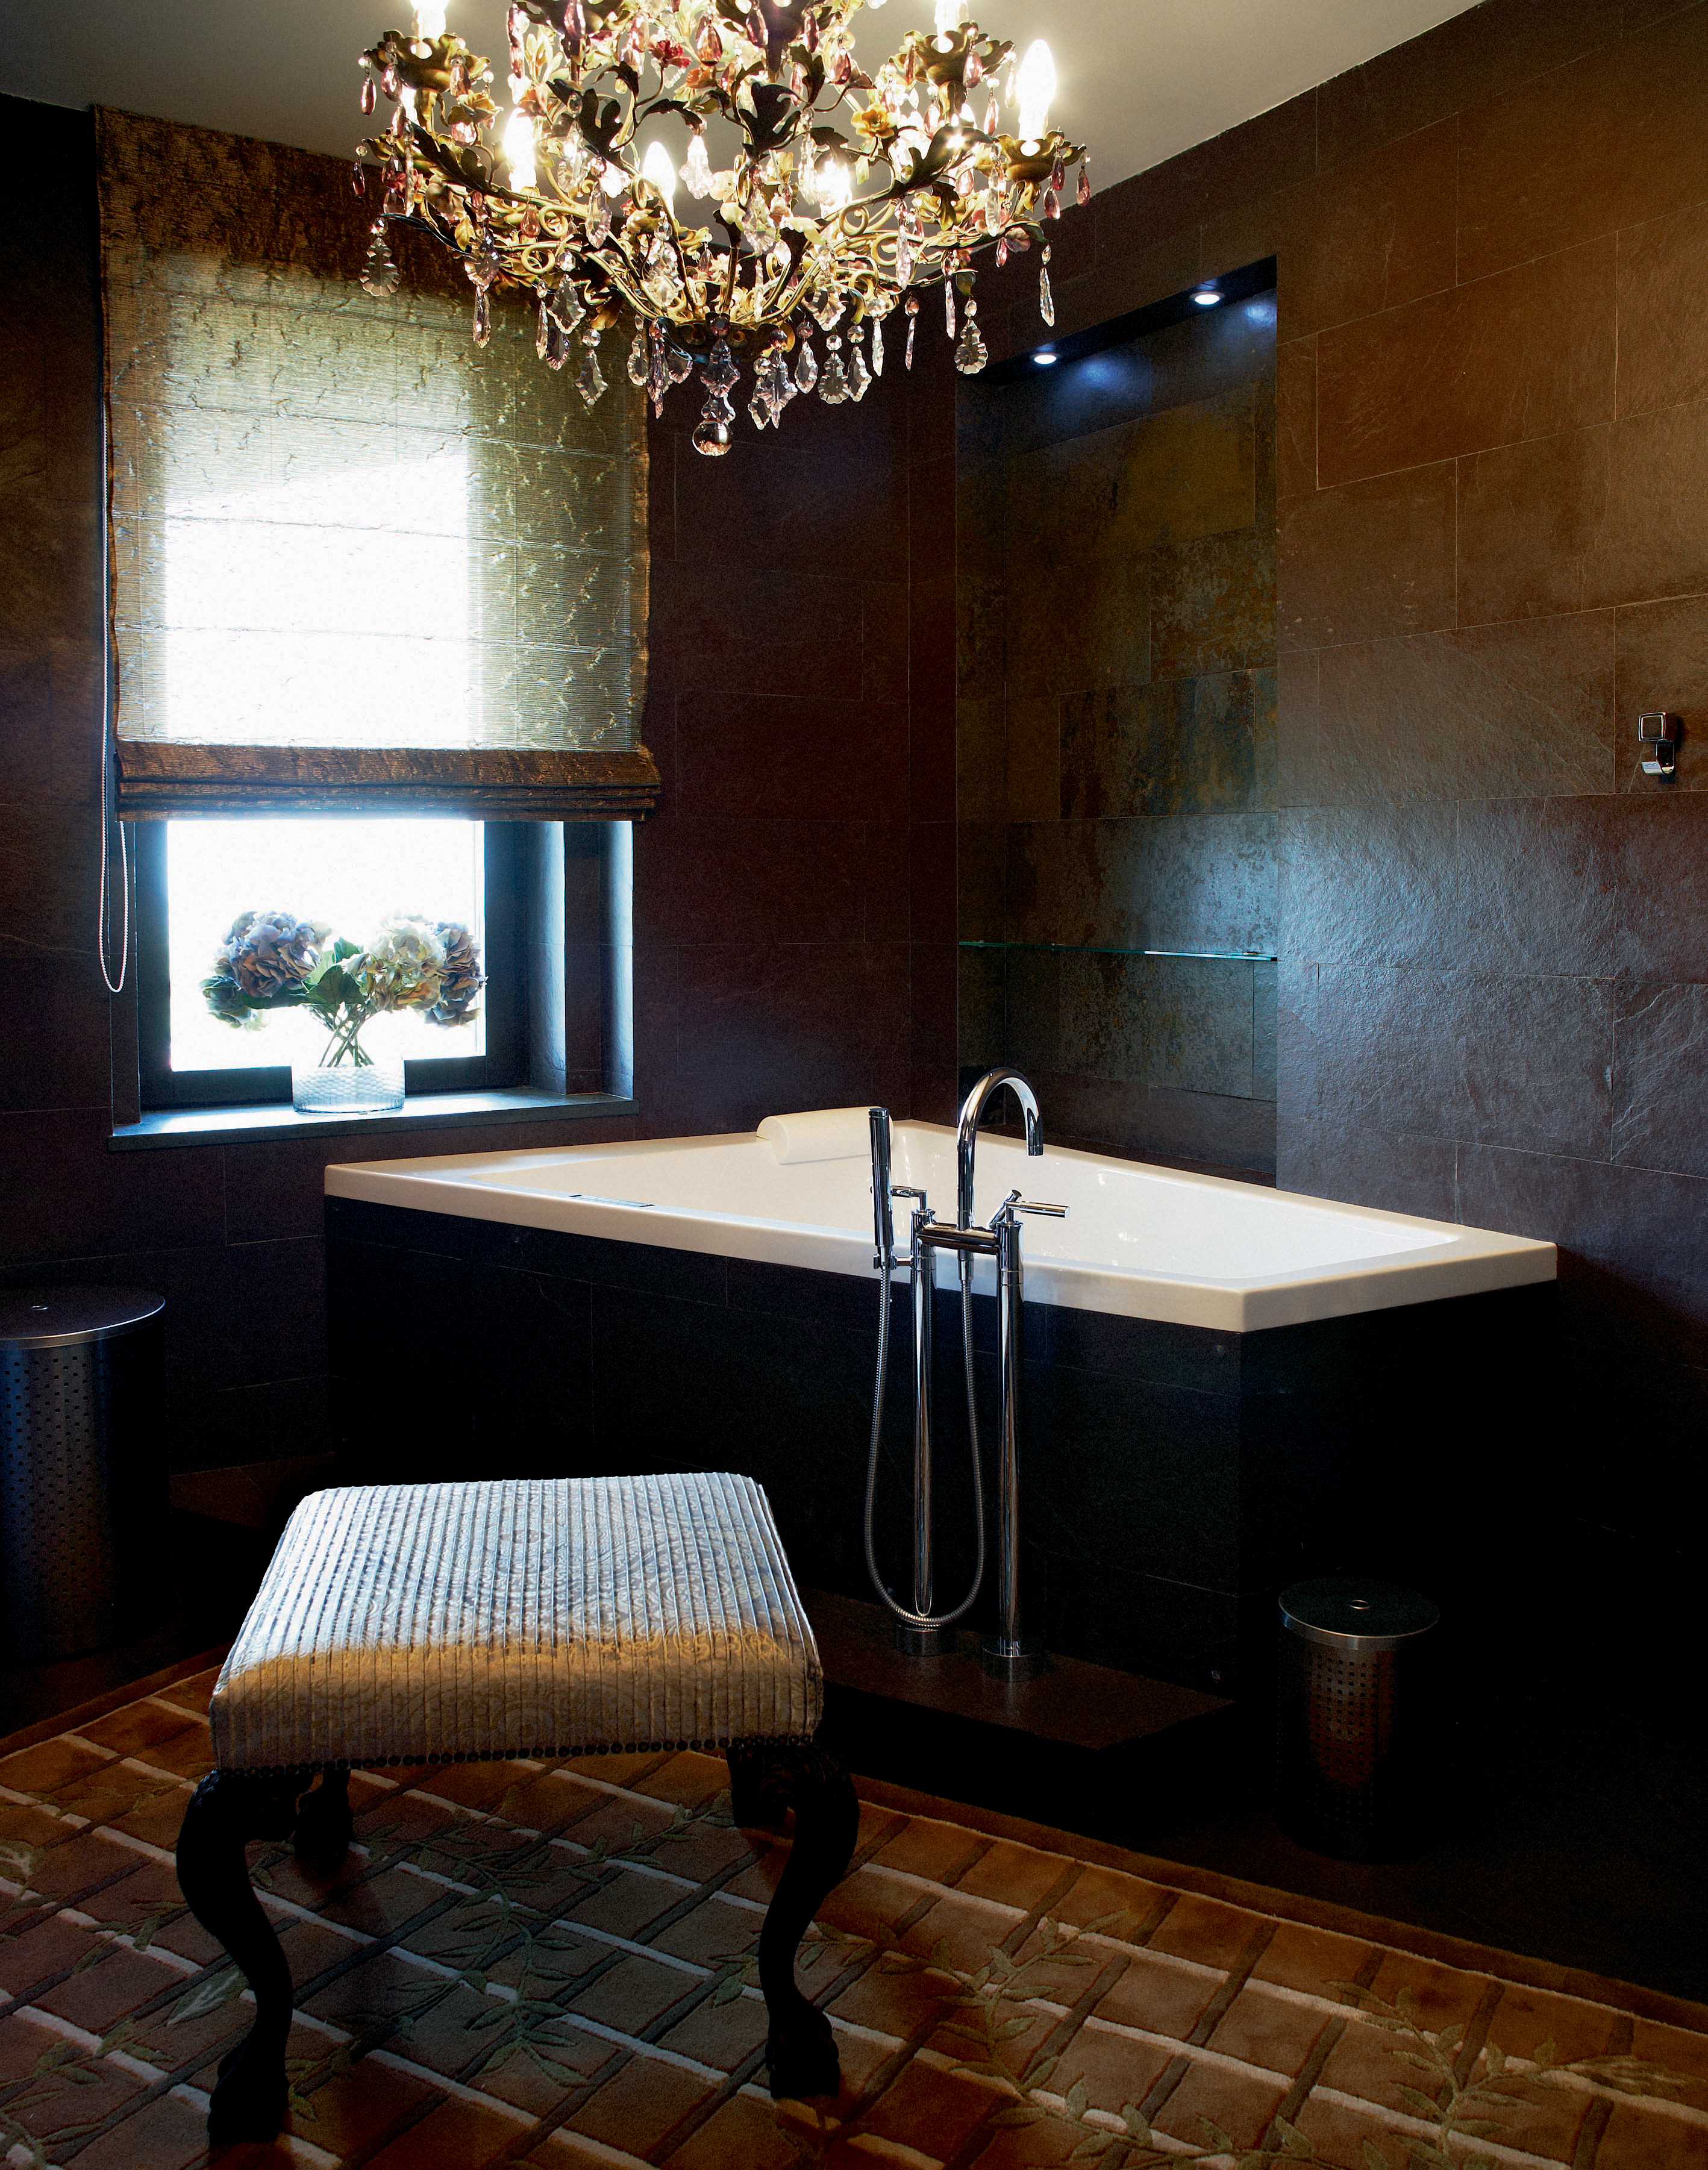 Варианты освещения в ванной: советы, правила и дизайн